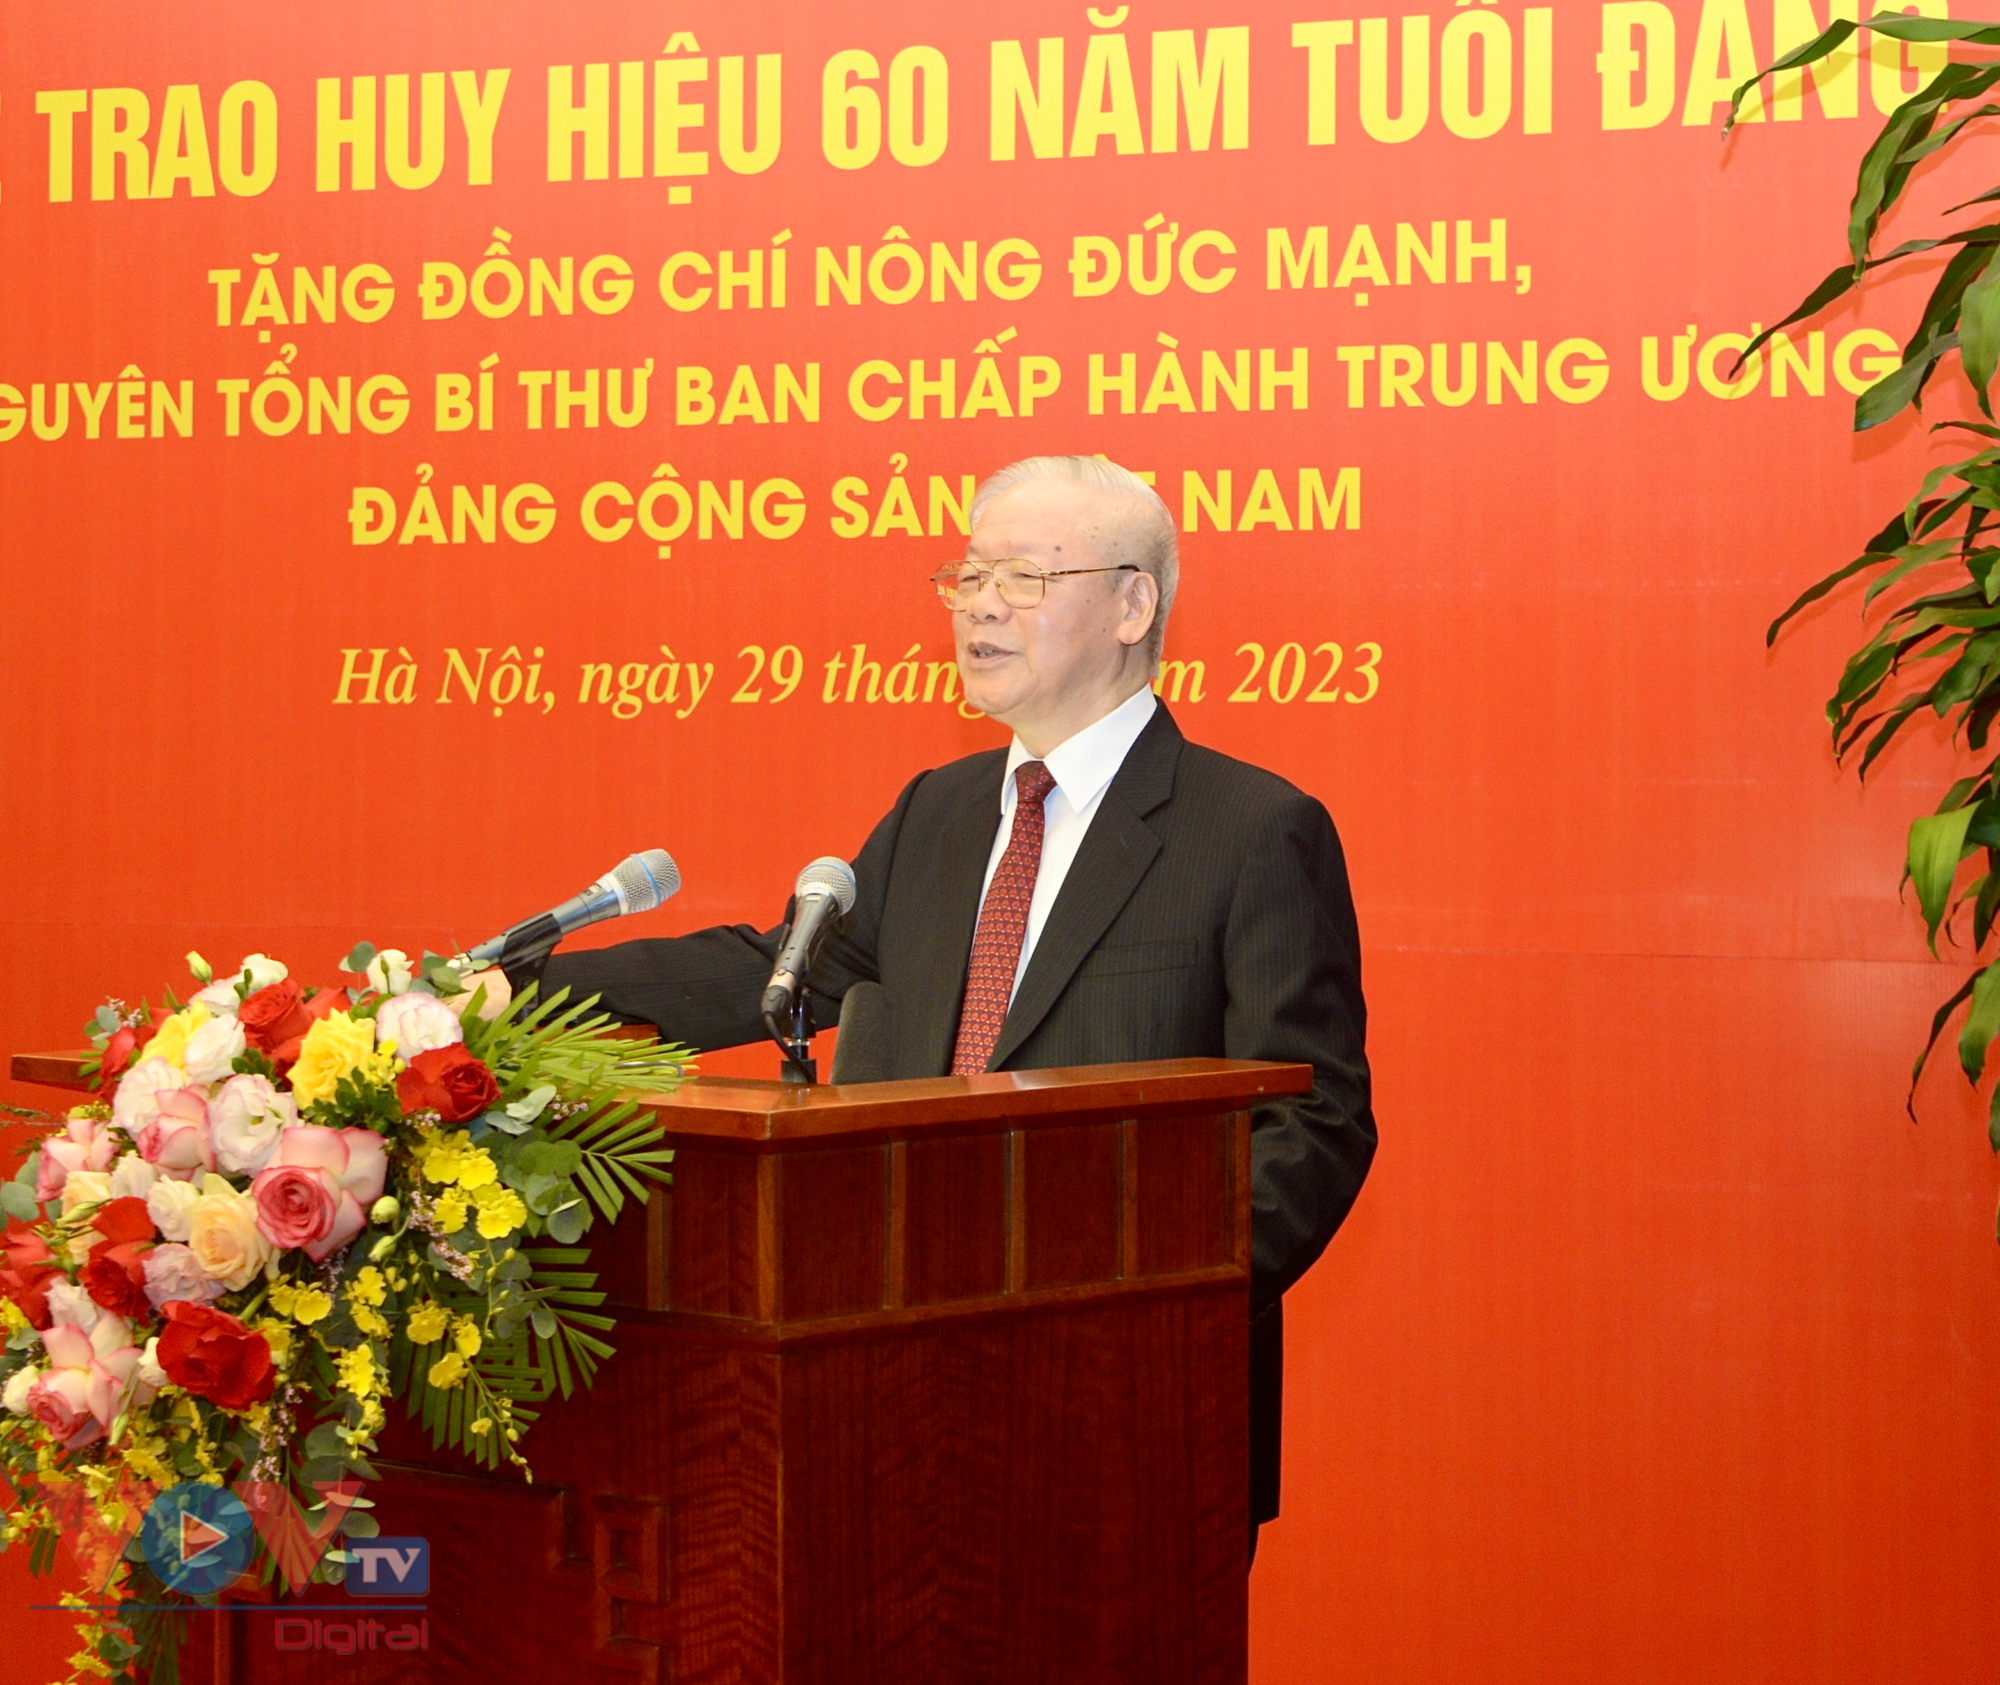 Tổng Bí thư Nguyễn Phú Trọng trao huy hiệu 60 năm tuổi Đảng tặng Nguyên Tổng Bí thư Nông Đức Mạnh - Ảnh 2.